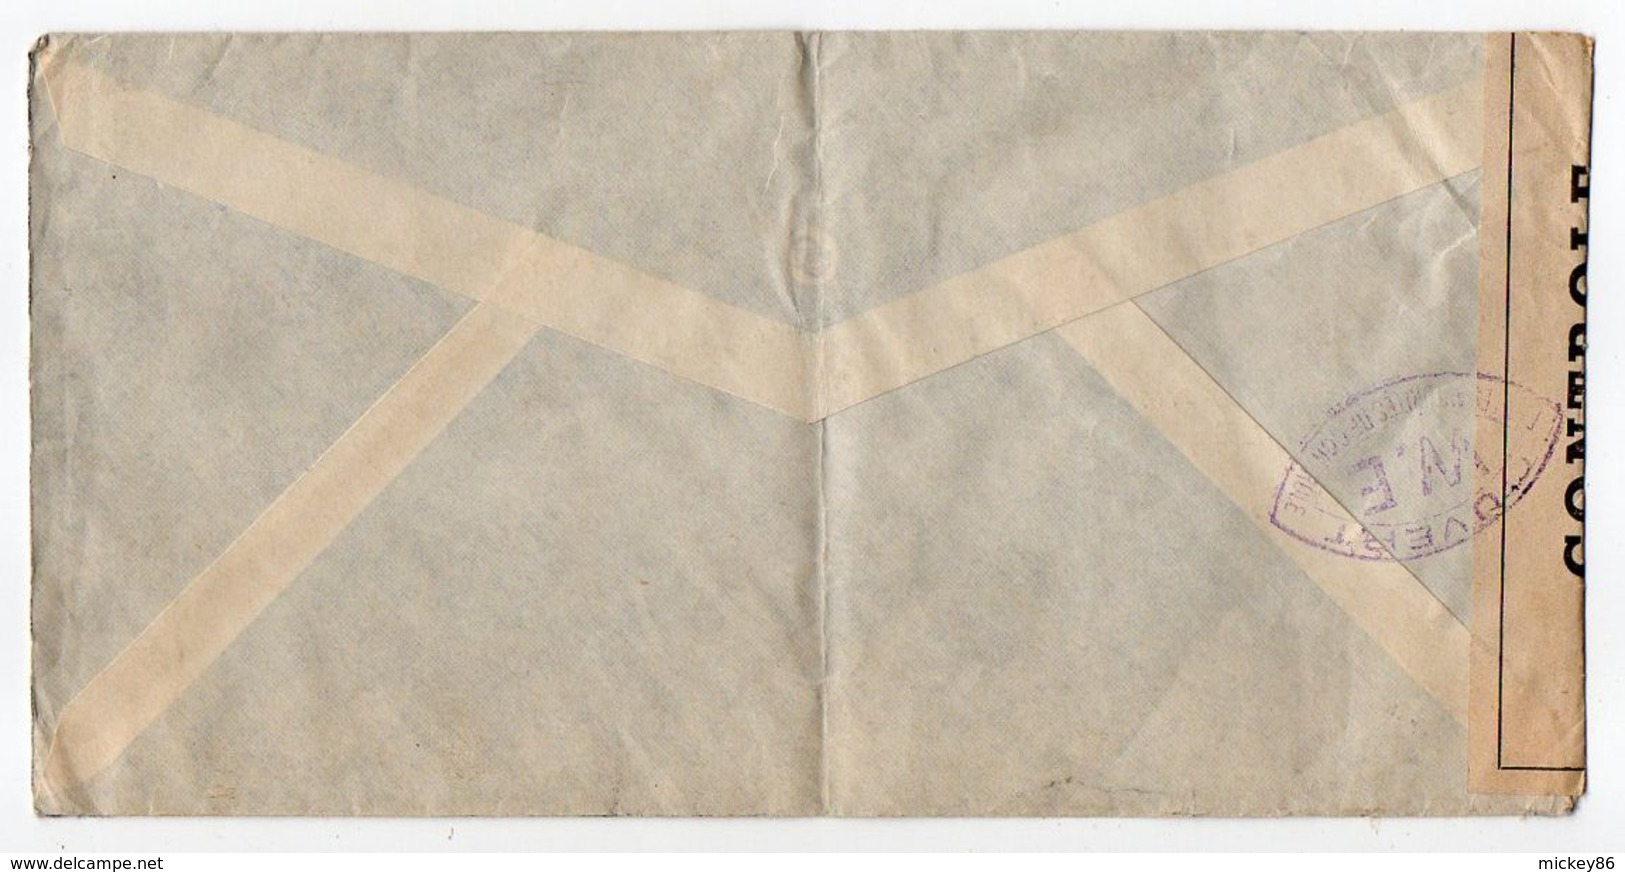 Suisse-1940-Lettre CENSUREE (W.E) De Bâle Pour La France -timbre --cachet -- Personnalisée  G.KIEFFER & Cie - Brieven En Documenten